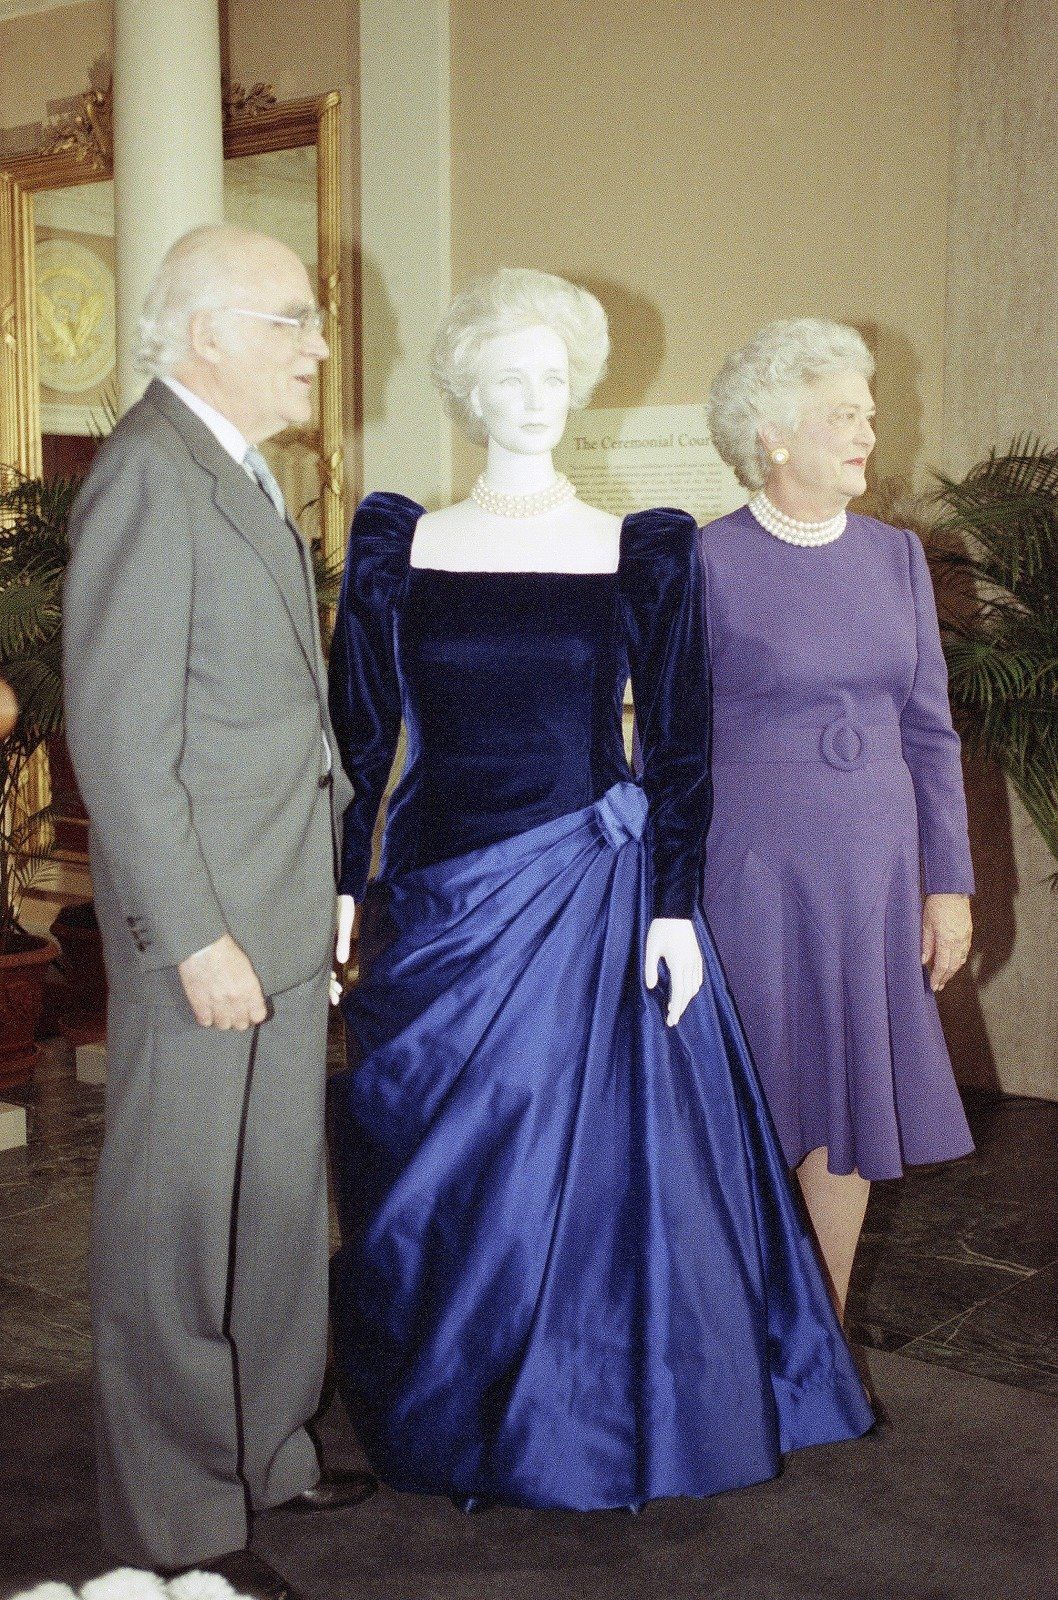 歴代ファーストレディが大統領の就任パーティで披露したドレススタイルを総覧